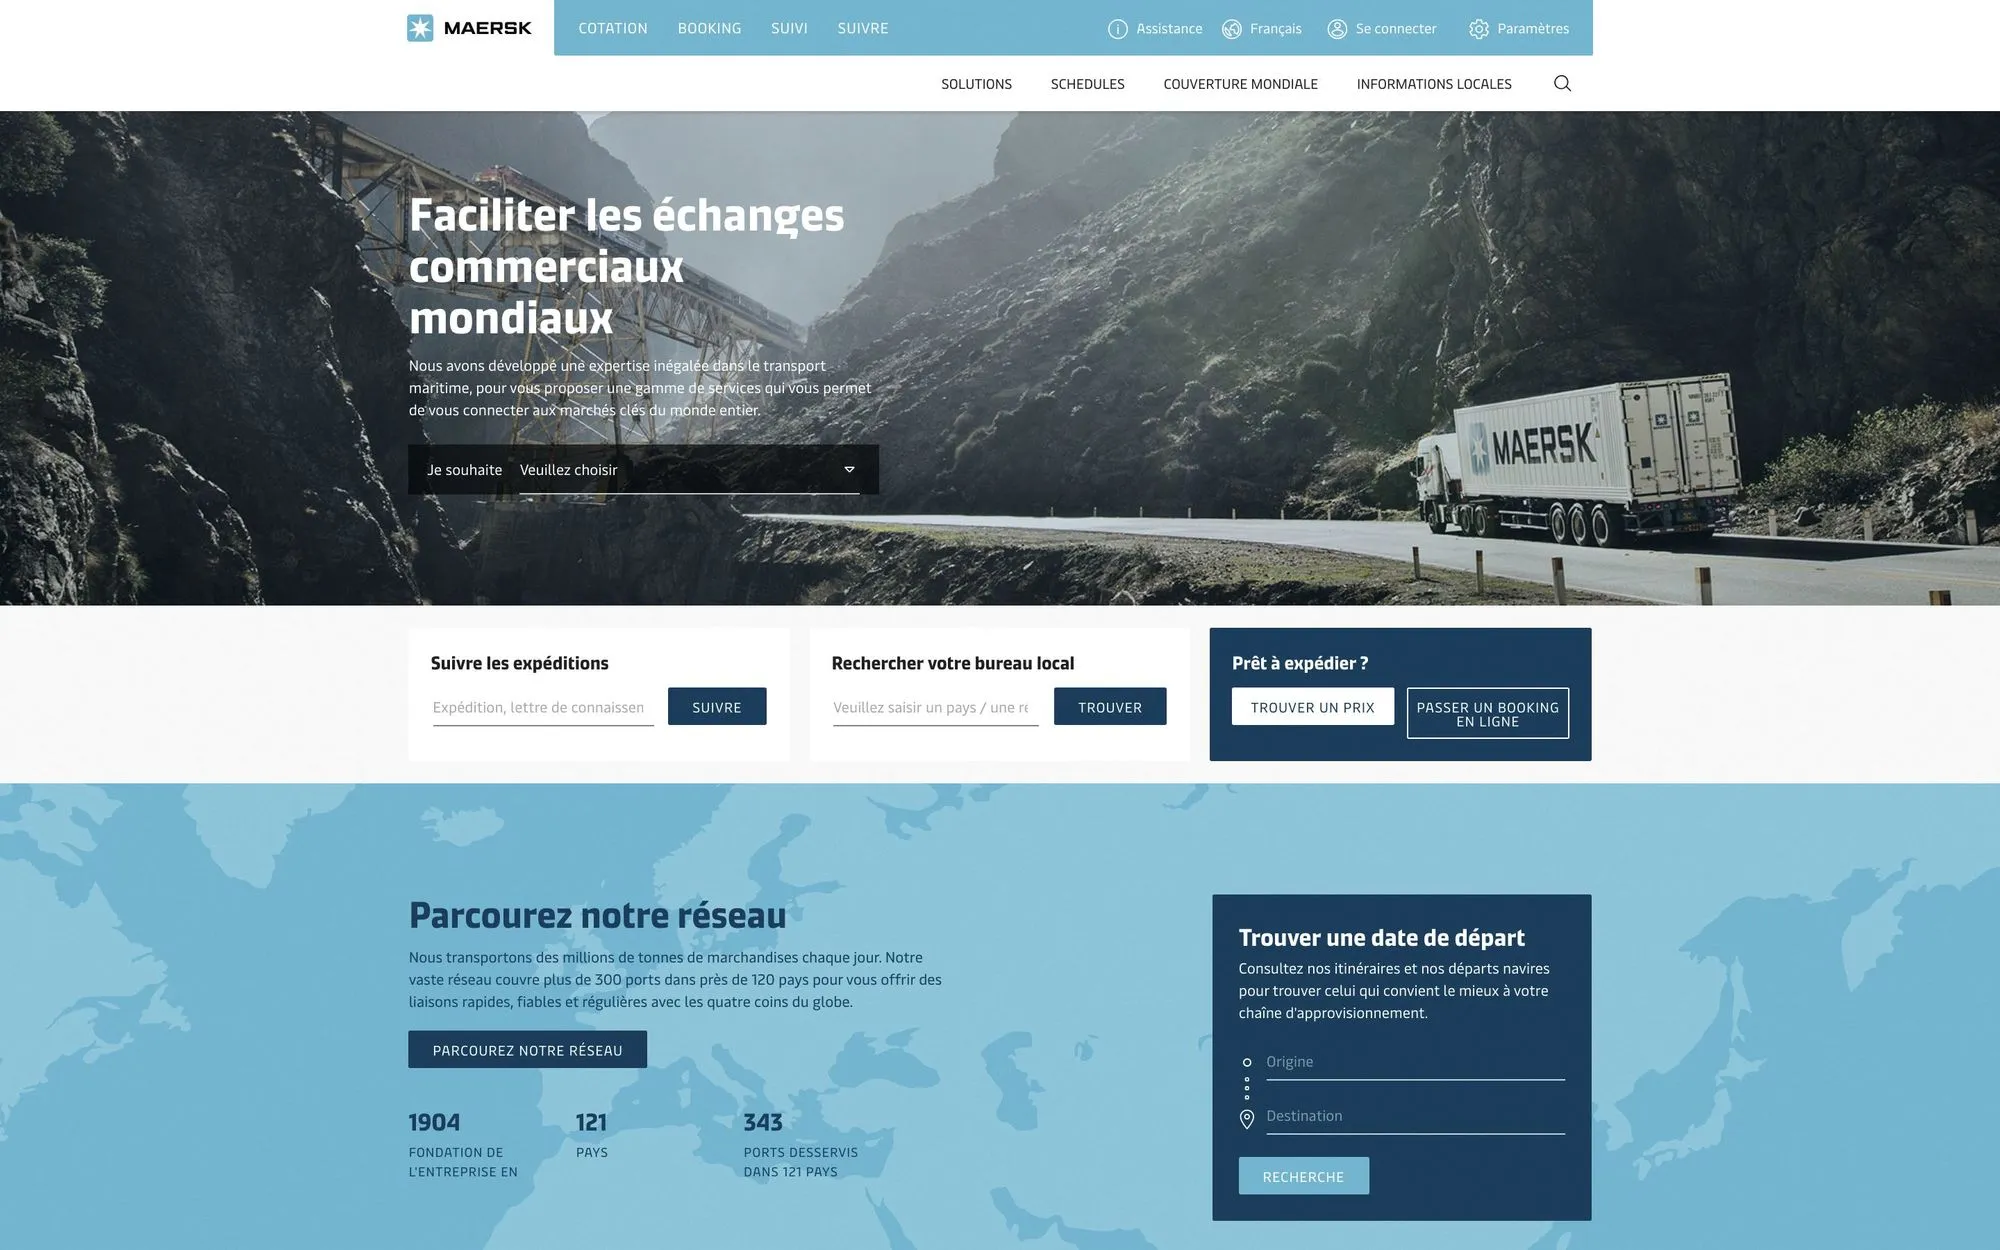 La page d'accueil de Maersk.com